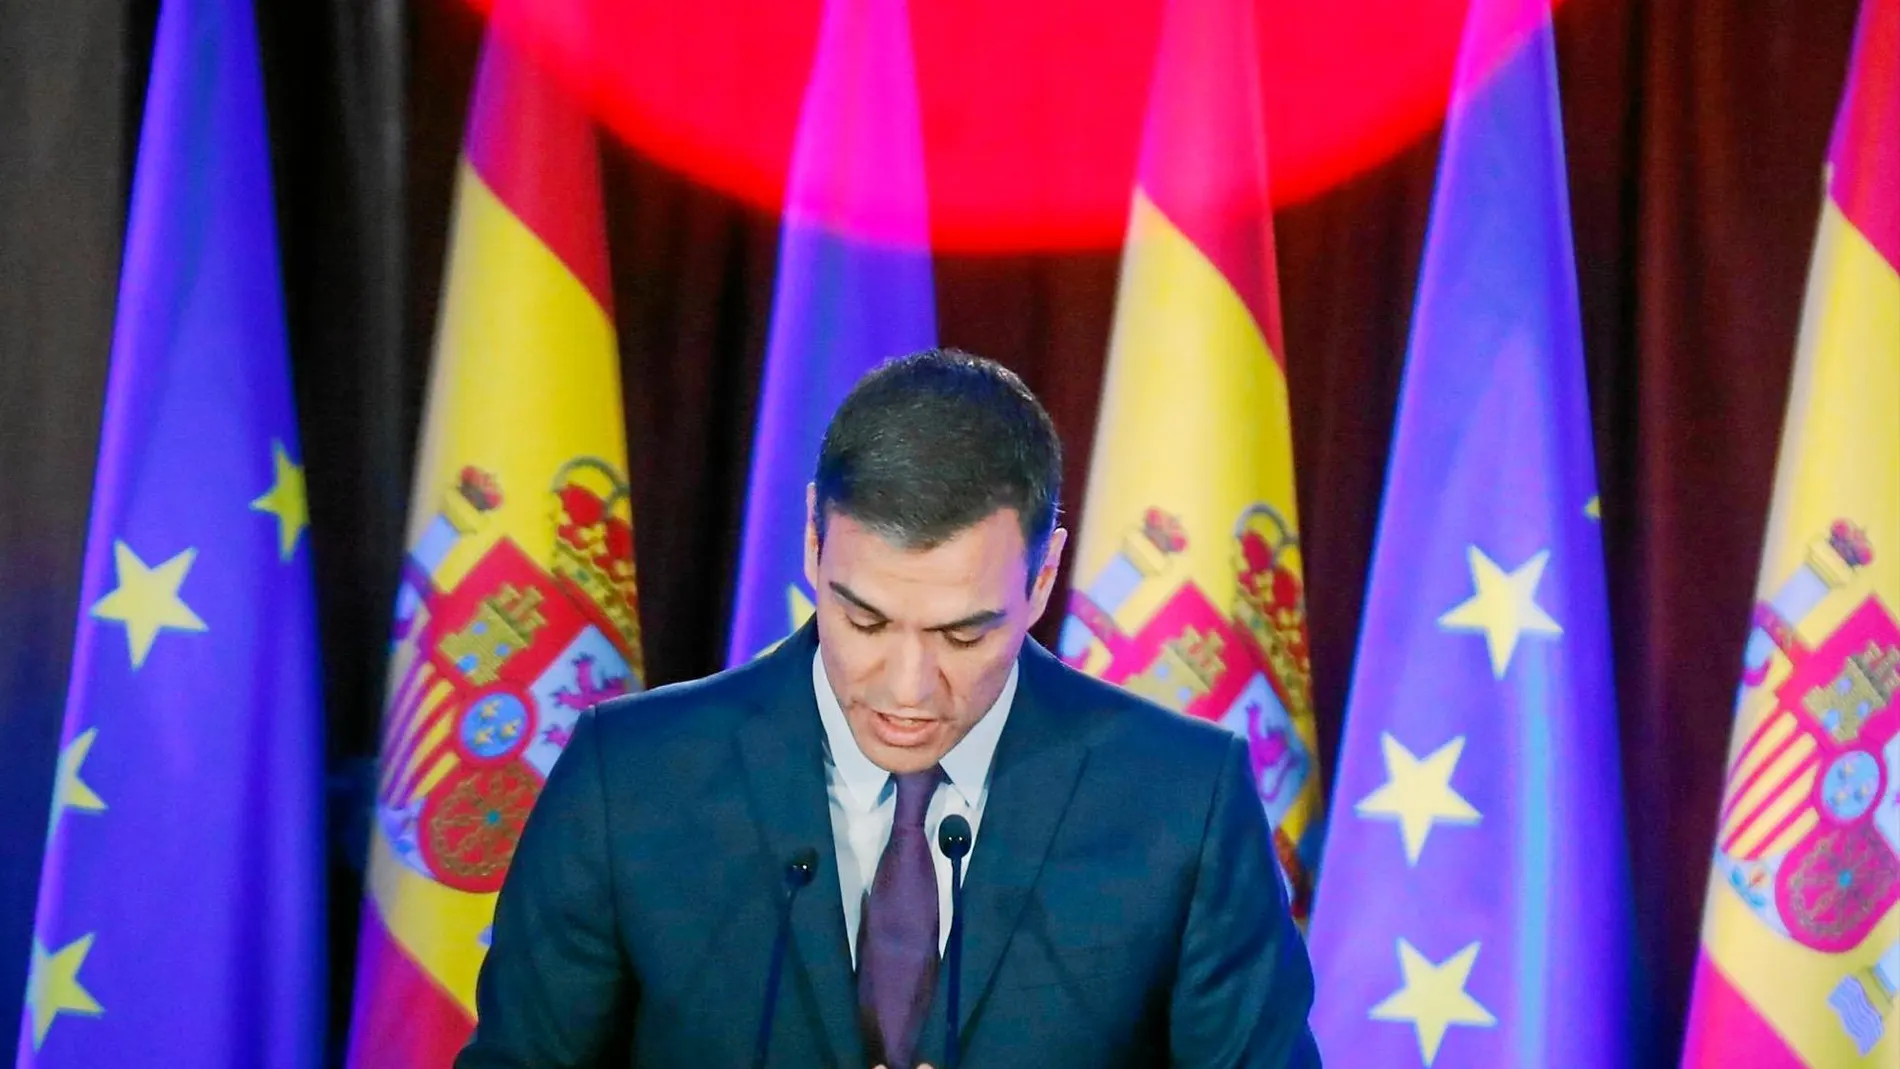 El presidente del Gobierno, Pedro Sánchez, ayer durante una conferencia en Madrid / Foto: Jesús G. Feria